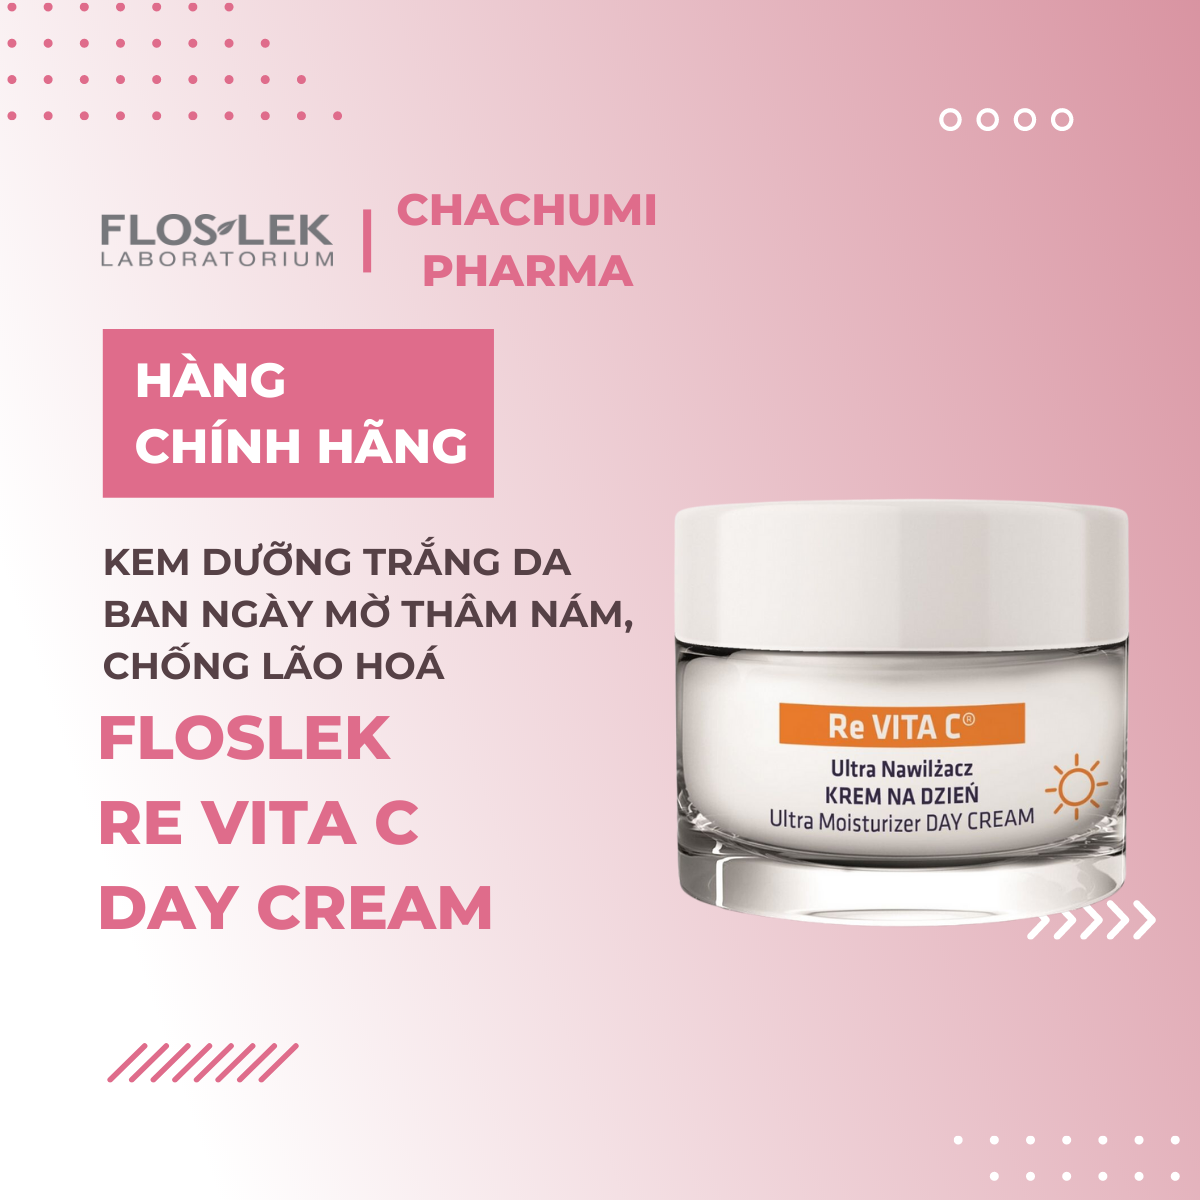 Floslek Re Vita C Day Cream - Kem dưỡng trắng da ban ngày mờ thâm nám, chống lão hoá 50ml